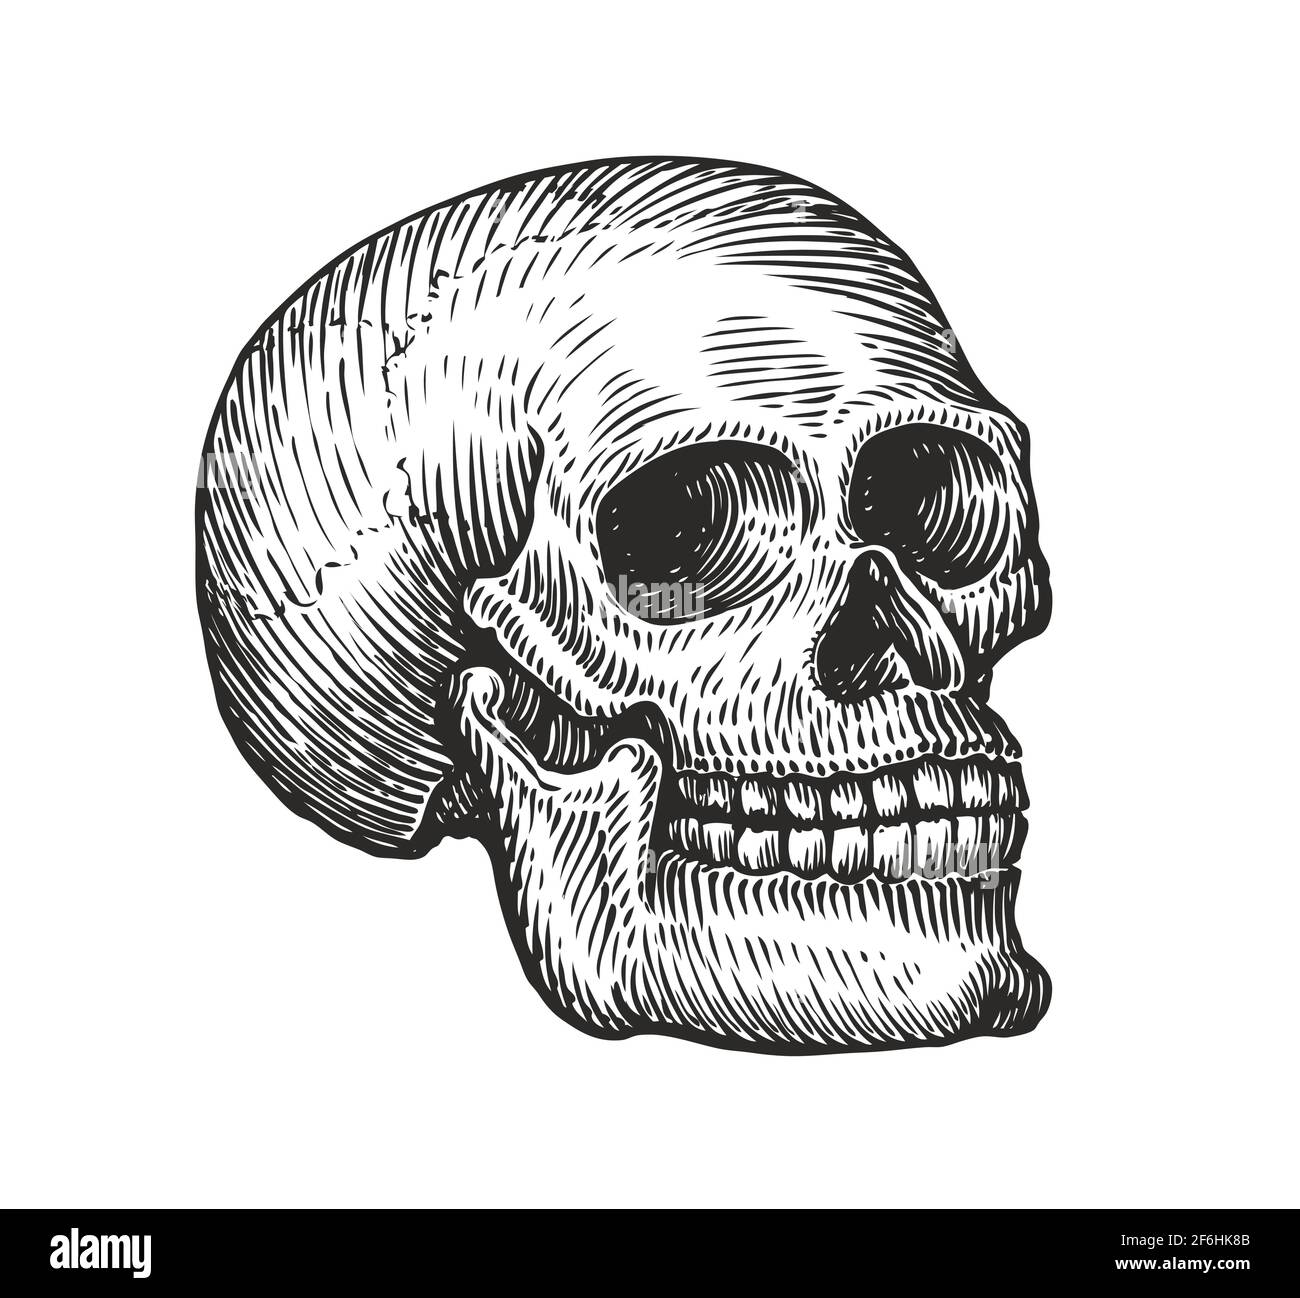 Cranio umano in stile gotico d'epoca. Illustrazione vettoriale dello schizzo di incisione Illustrazione Vettoriale